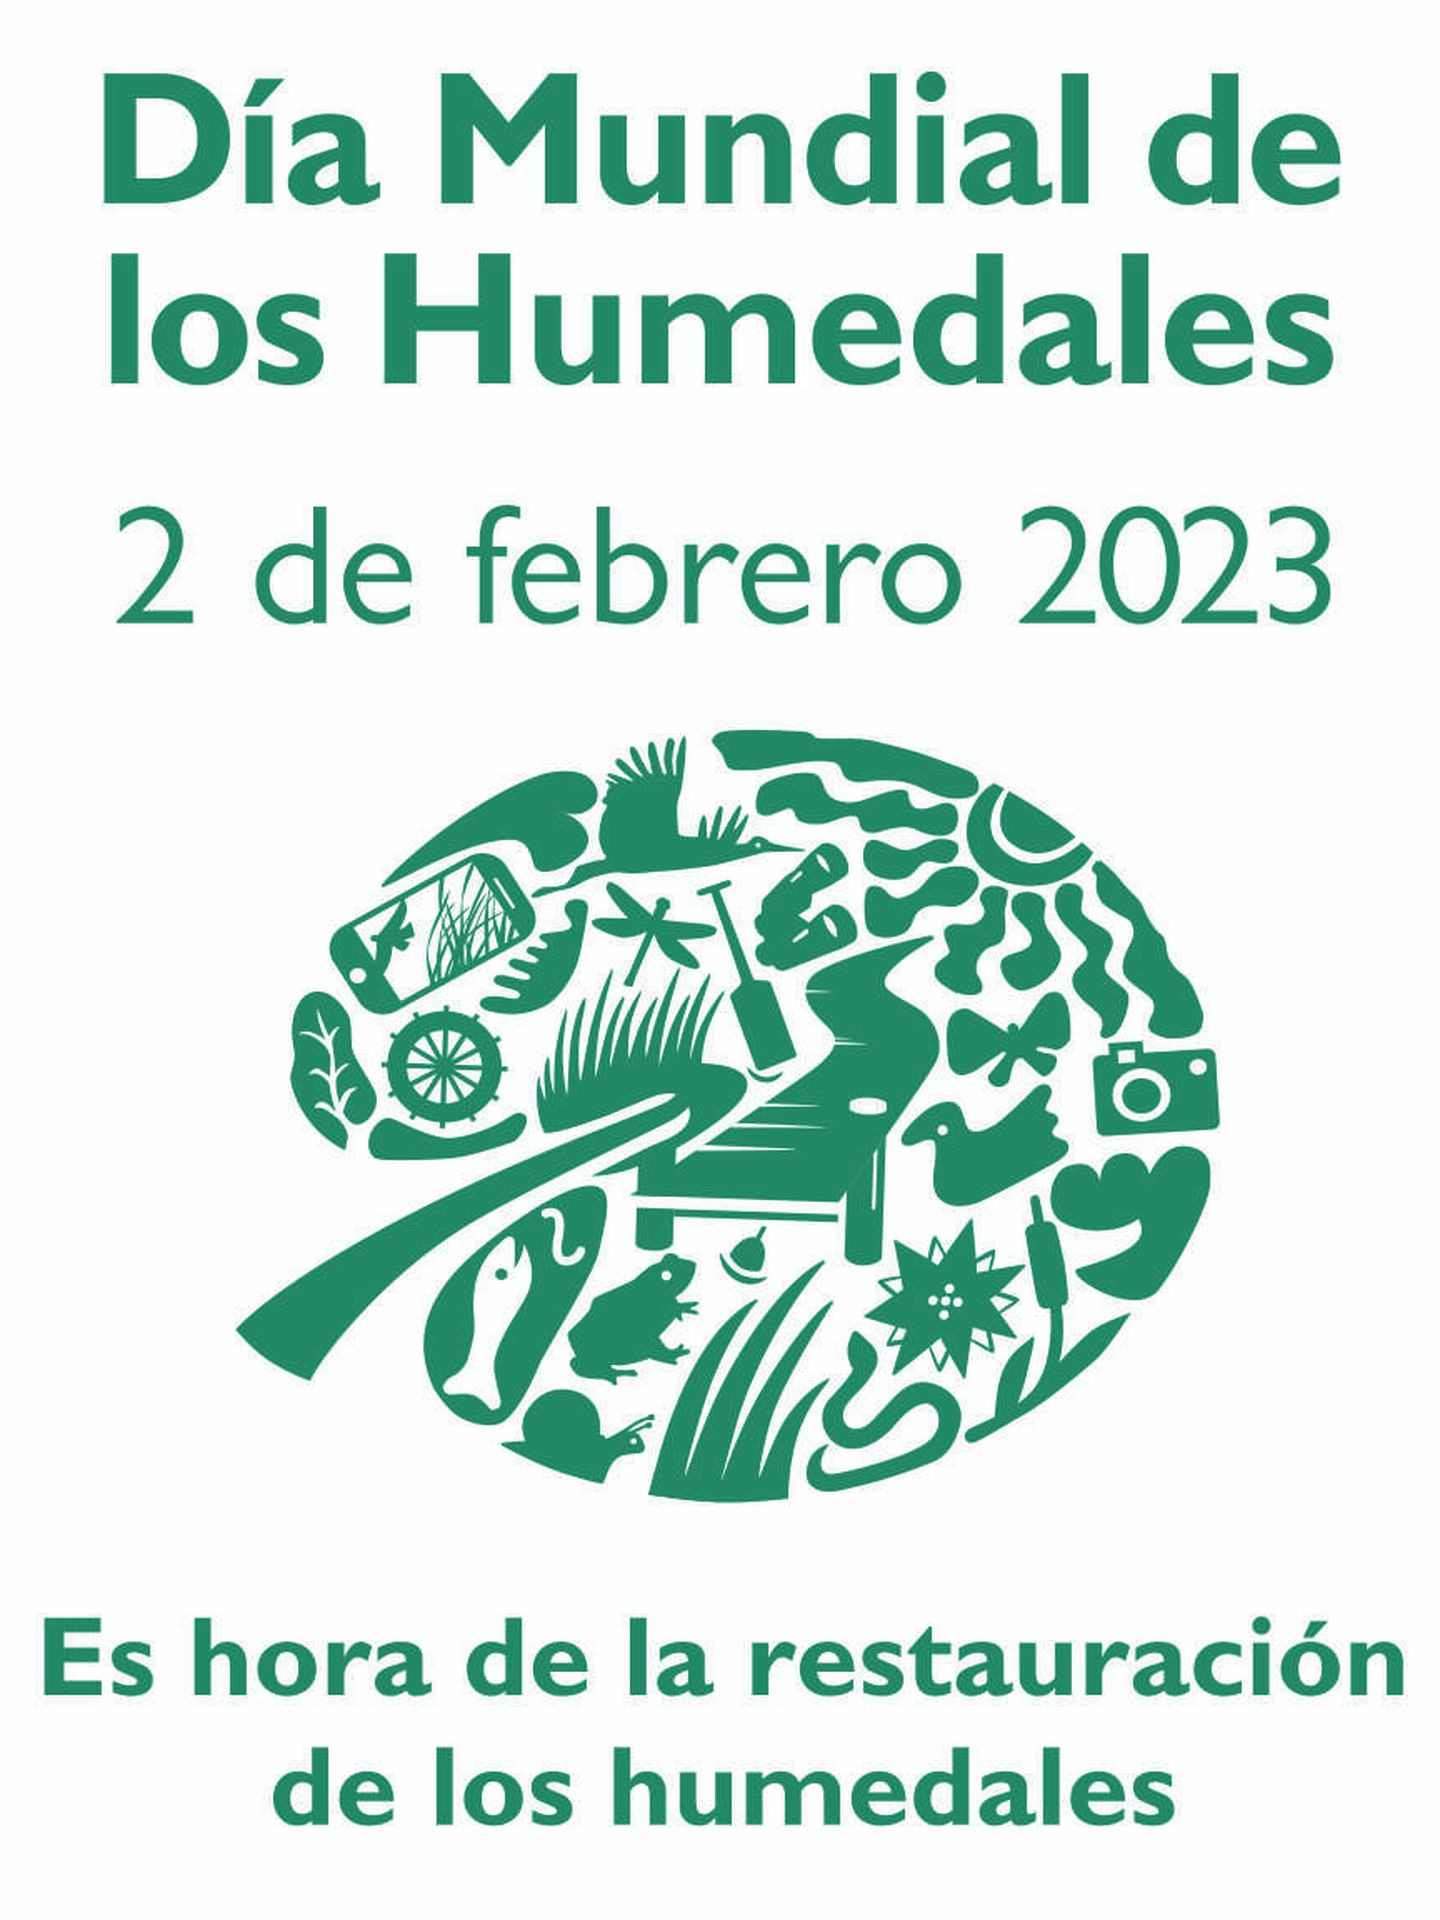 Día Mundial de los Humedales 2023. (PNUMA)